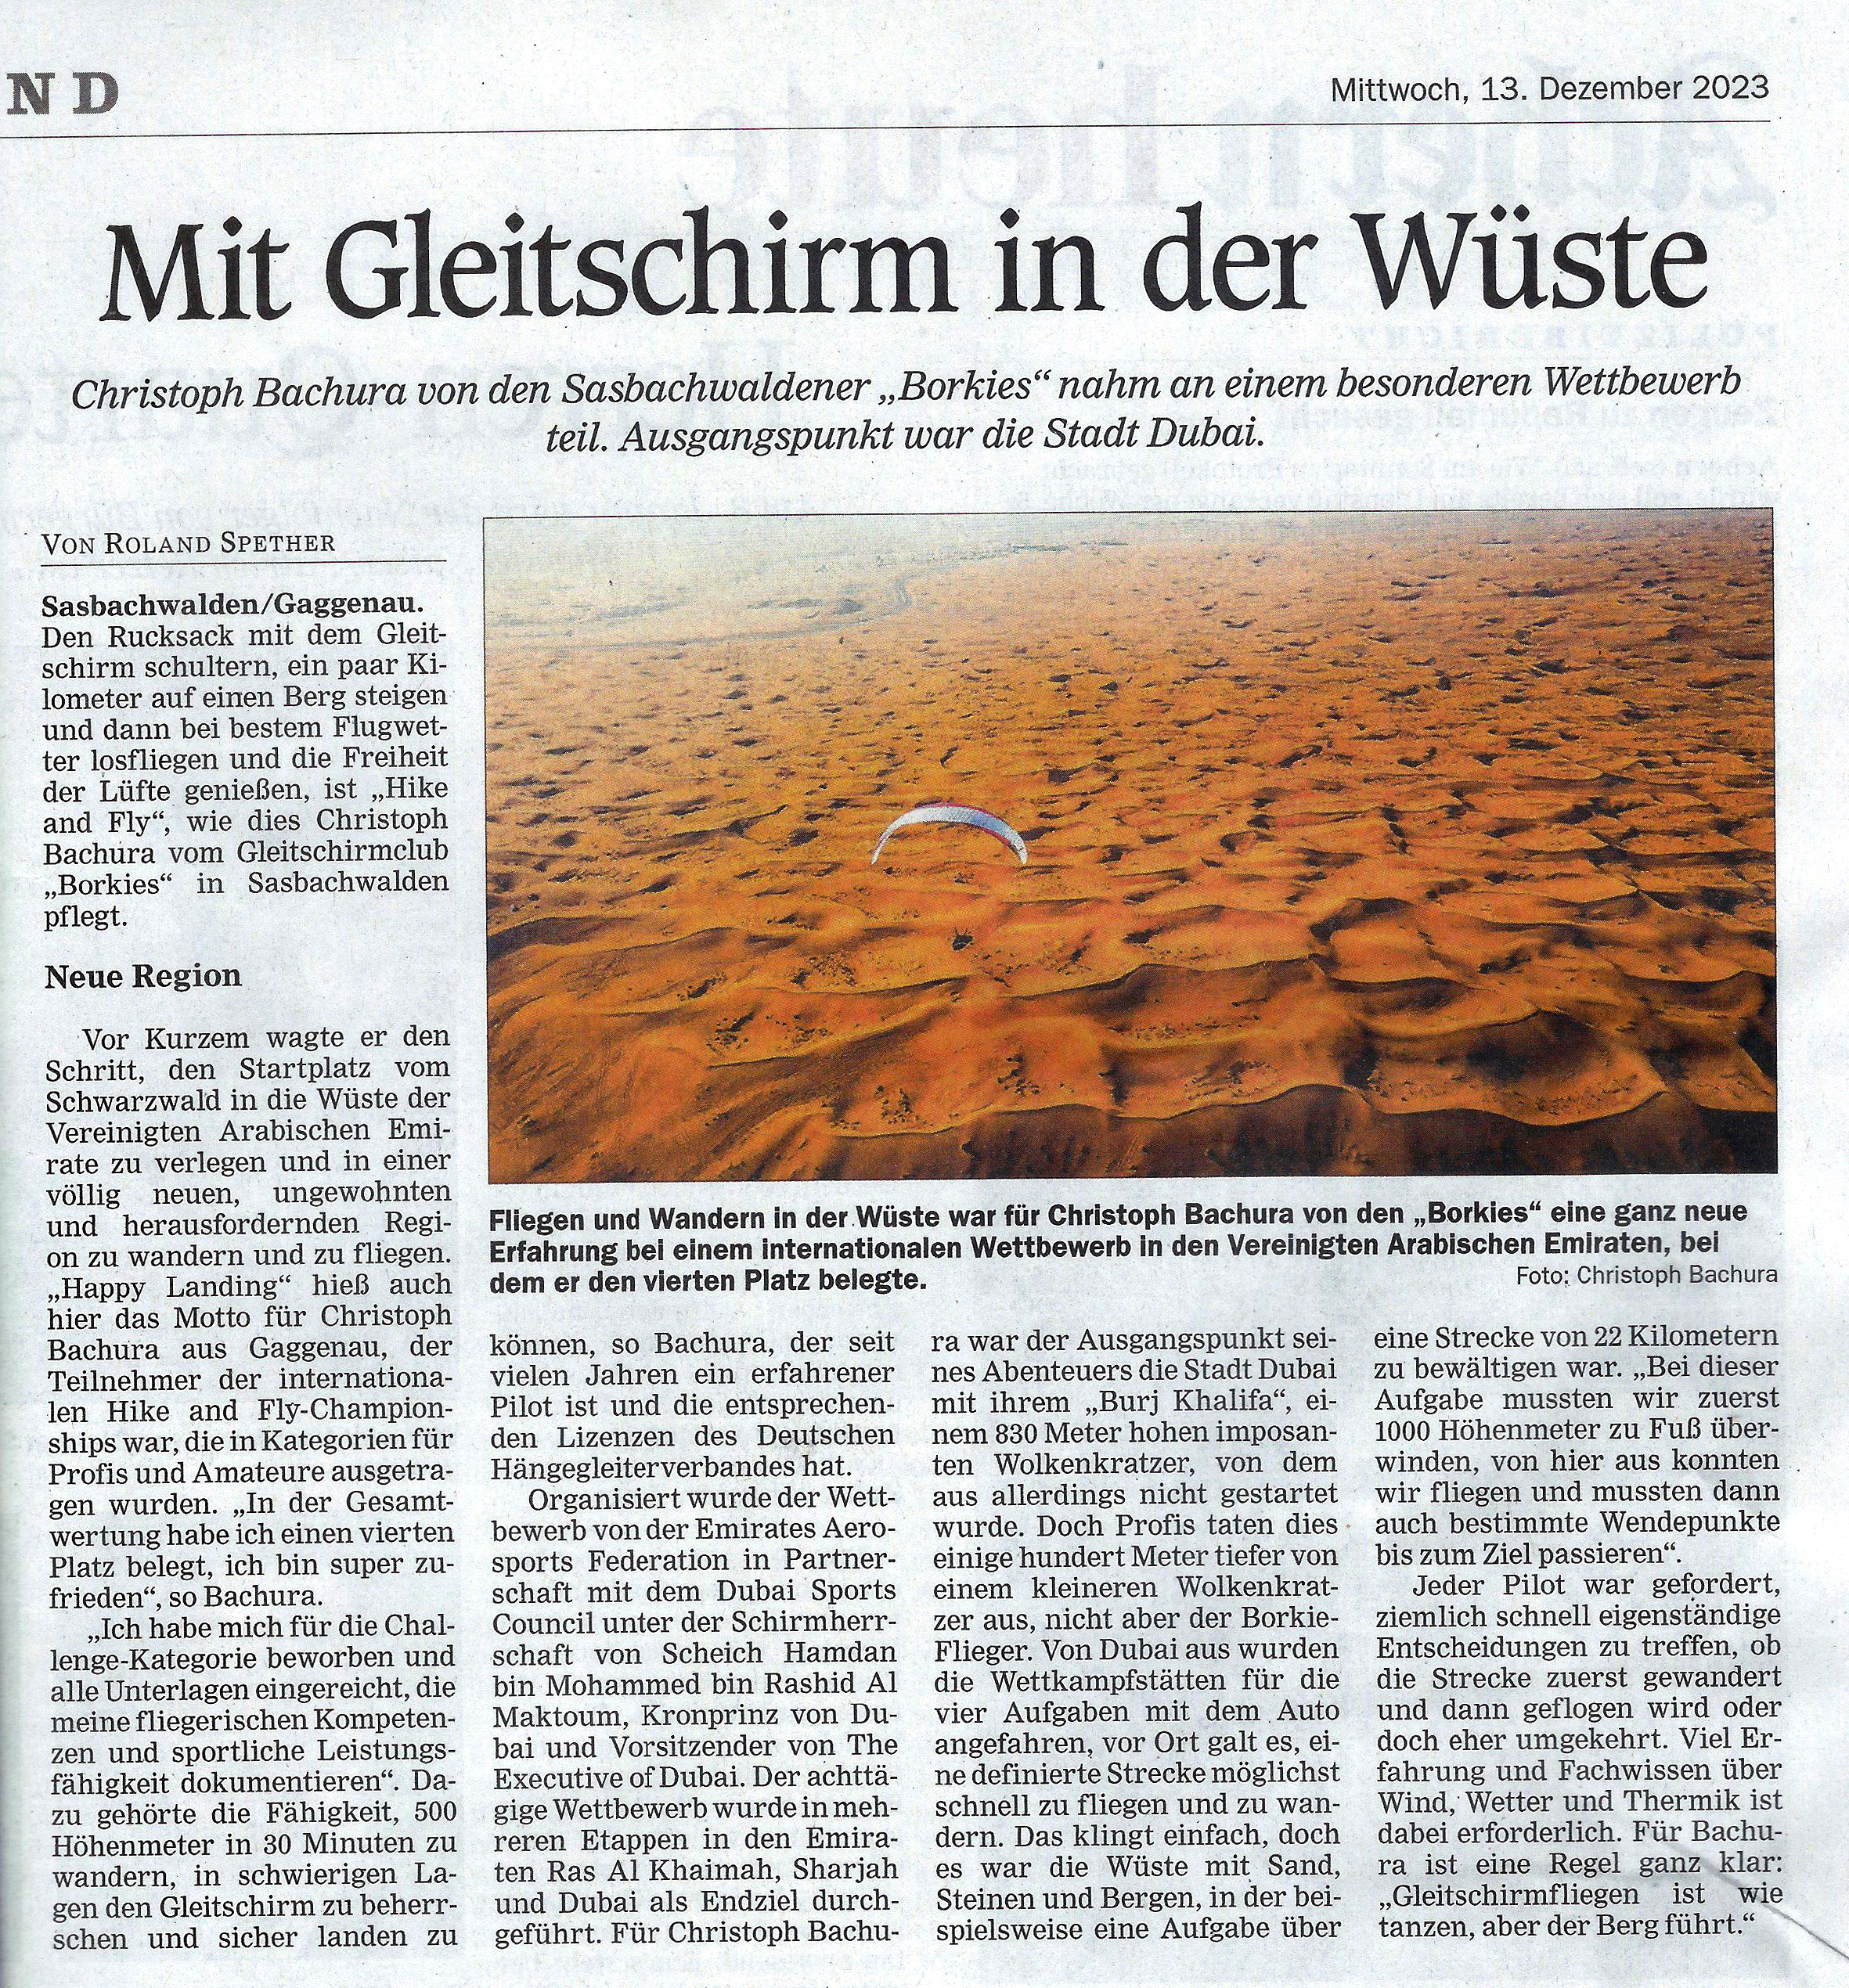 Zeitungsbericht in ARZ vom 13.12.2023 "Mit Gleitschirm in der Wüste"